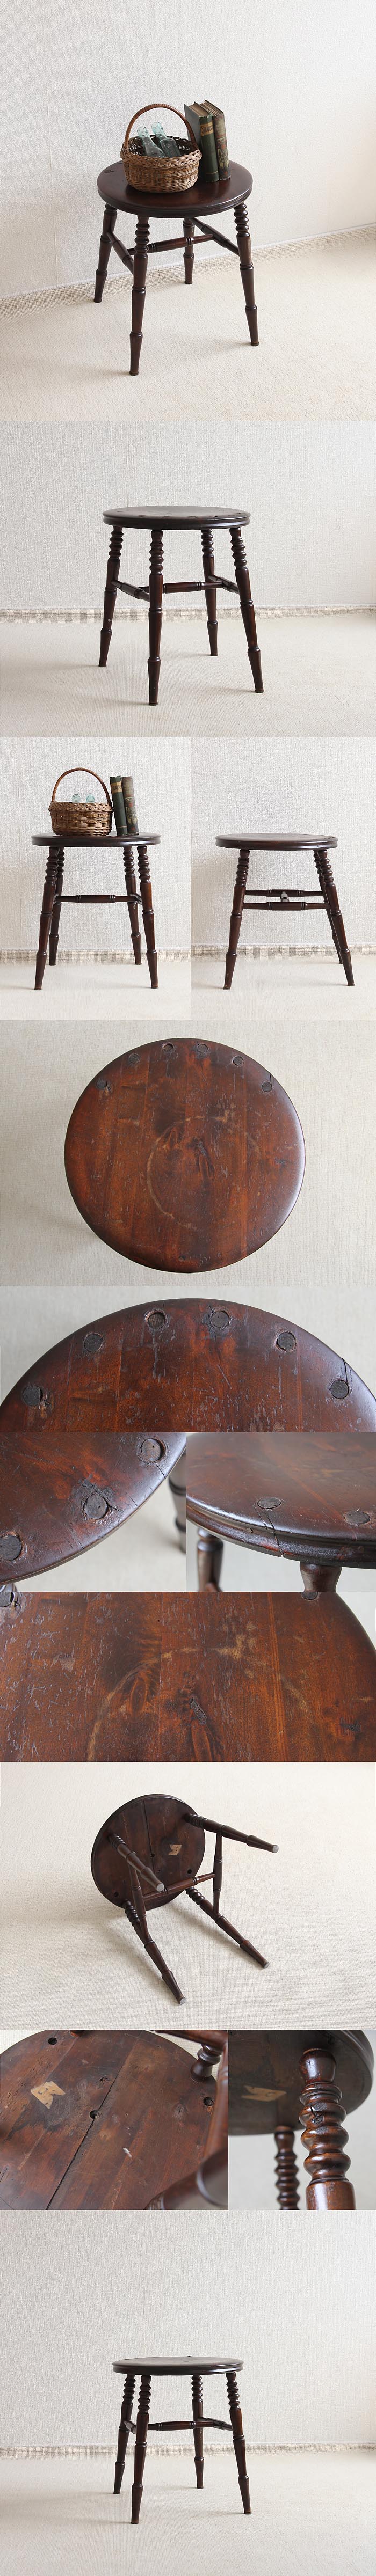 【訳あり】イギリス アンティーク スツール 木製 英国 家具 飾り台「古い丸イス」V-483